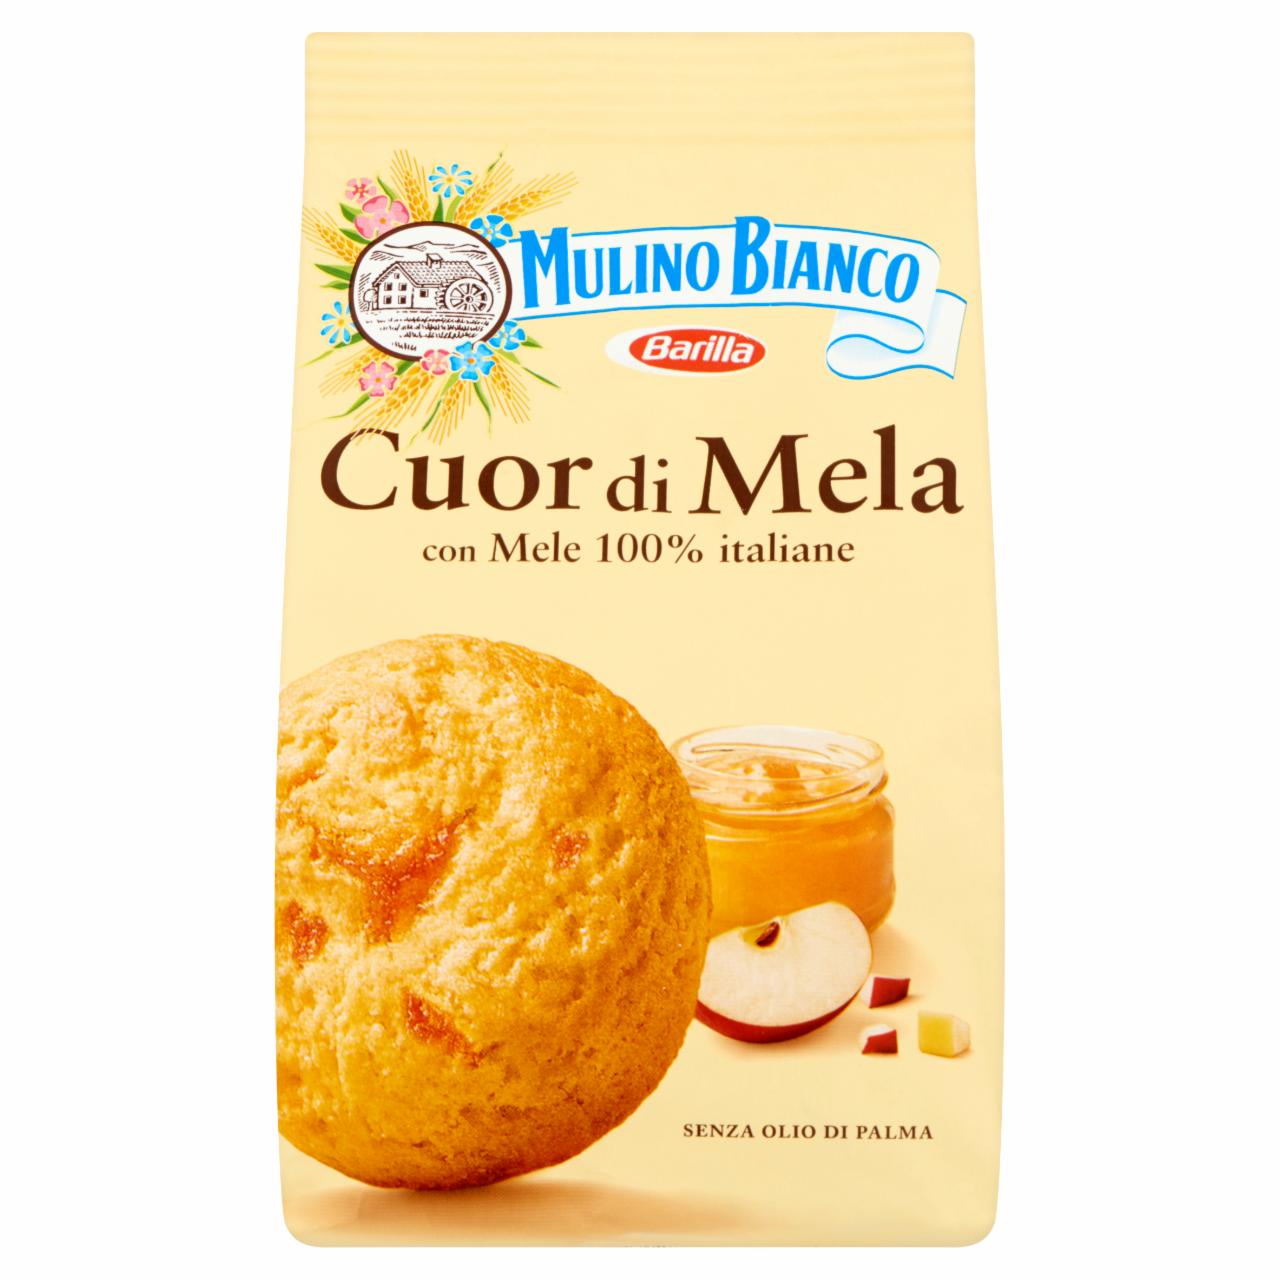 Képek - Mulino Bianco Cuor di Mela alma dzsemmel töltött omlós keksz 250 g